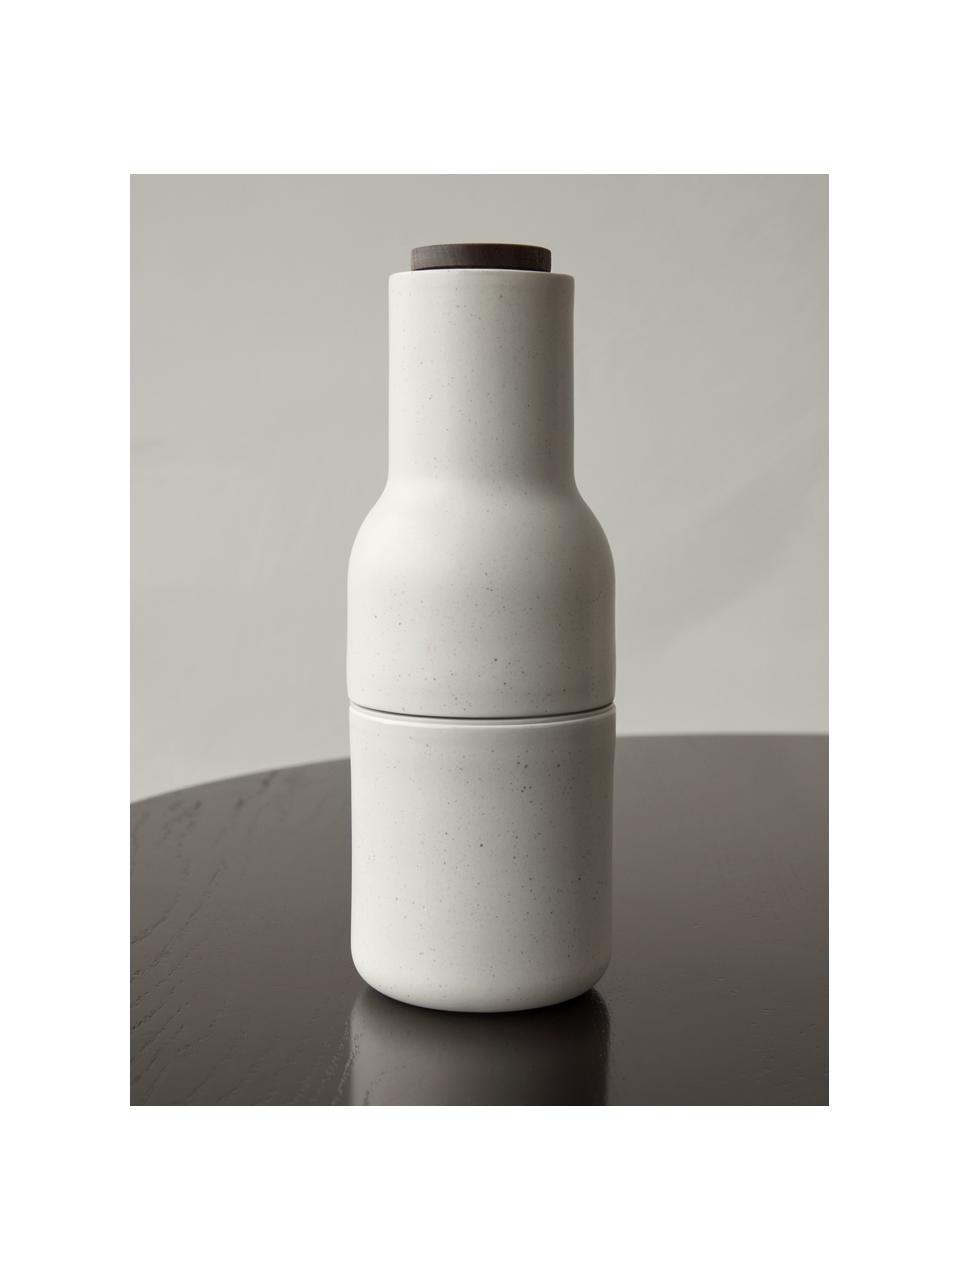 Komplet młynków do soli i pieprzu Bottle Grinder, 2 elem., Korpus: ceramika, Greige, biały, Ø 8 x W 21 cm